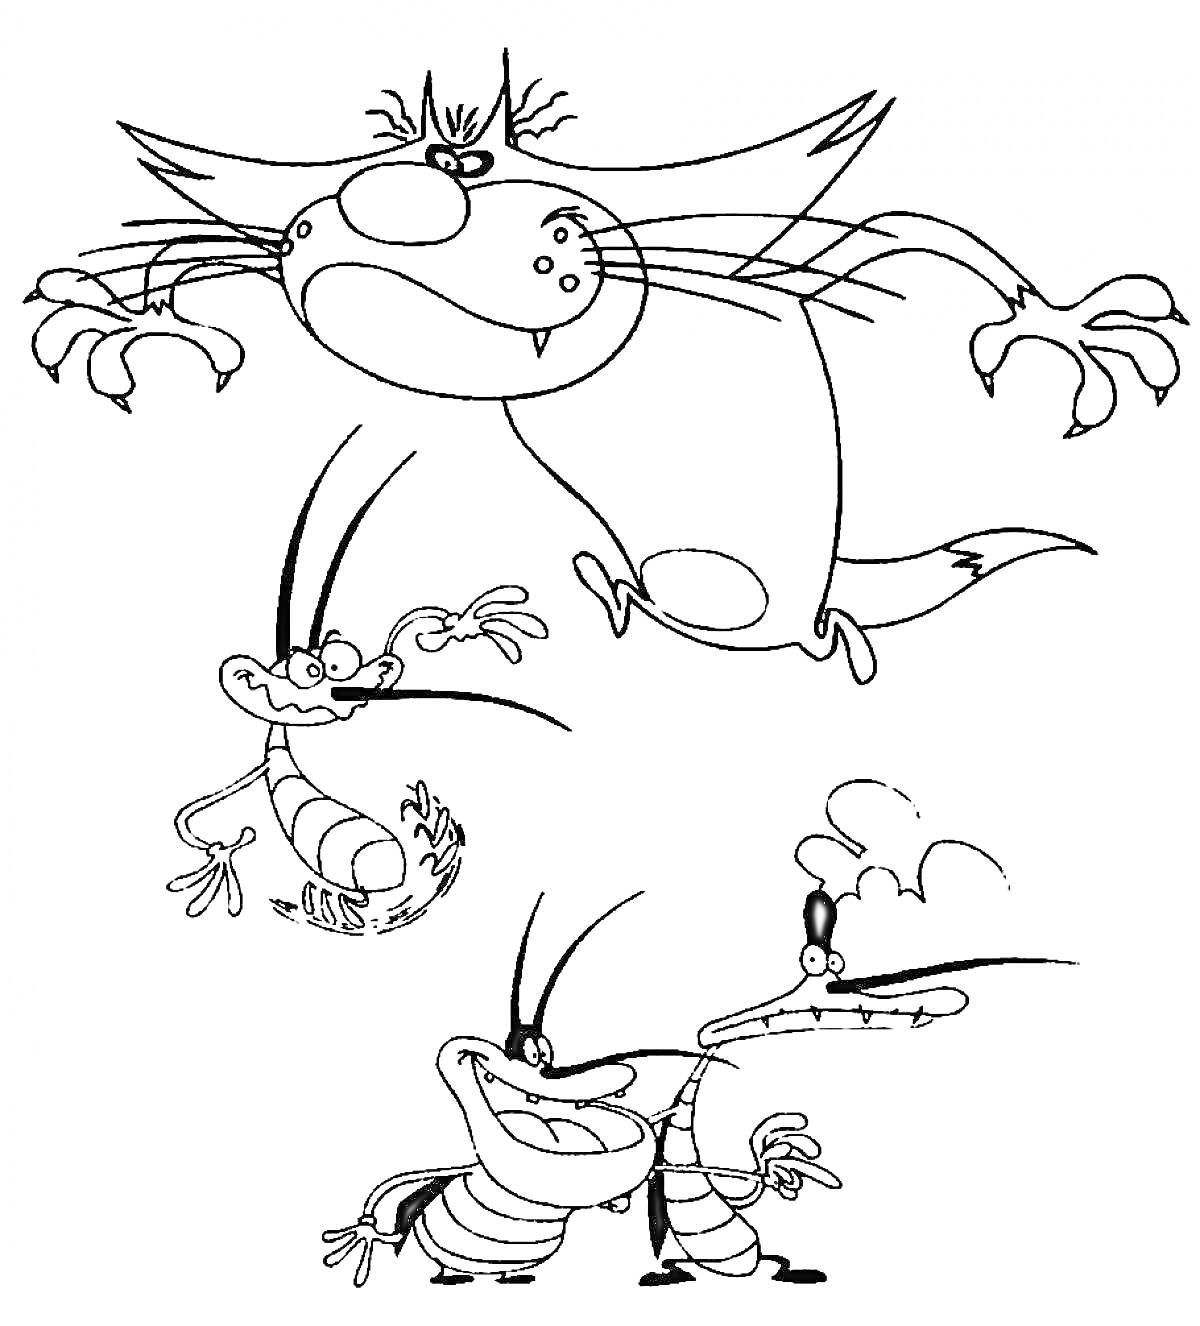 Огги и тараканы с тремя тараканами: Огги в прыжке, улыбающийся Марки с поднятыми руками, Диди с поднятыми руками и задумчивый Джои